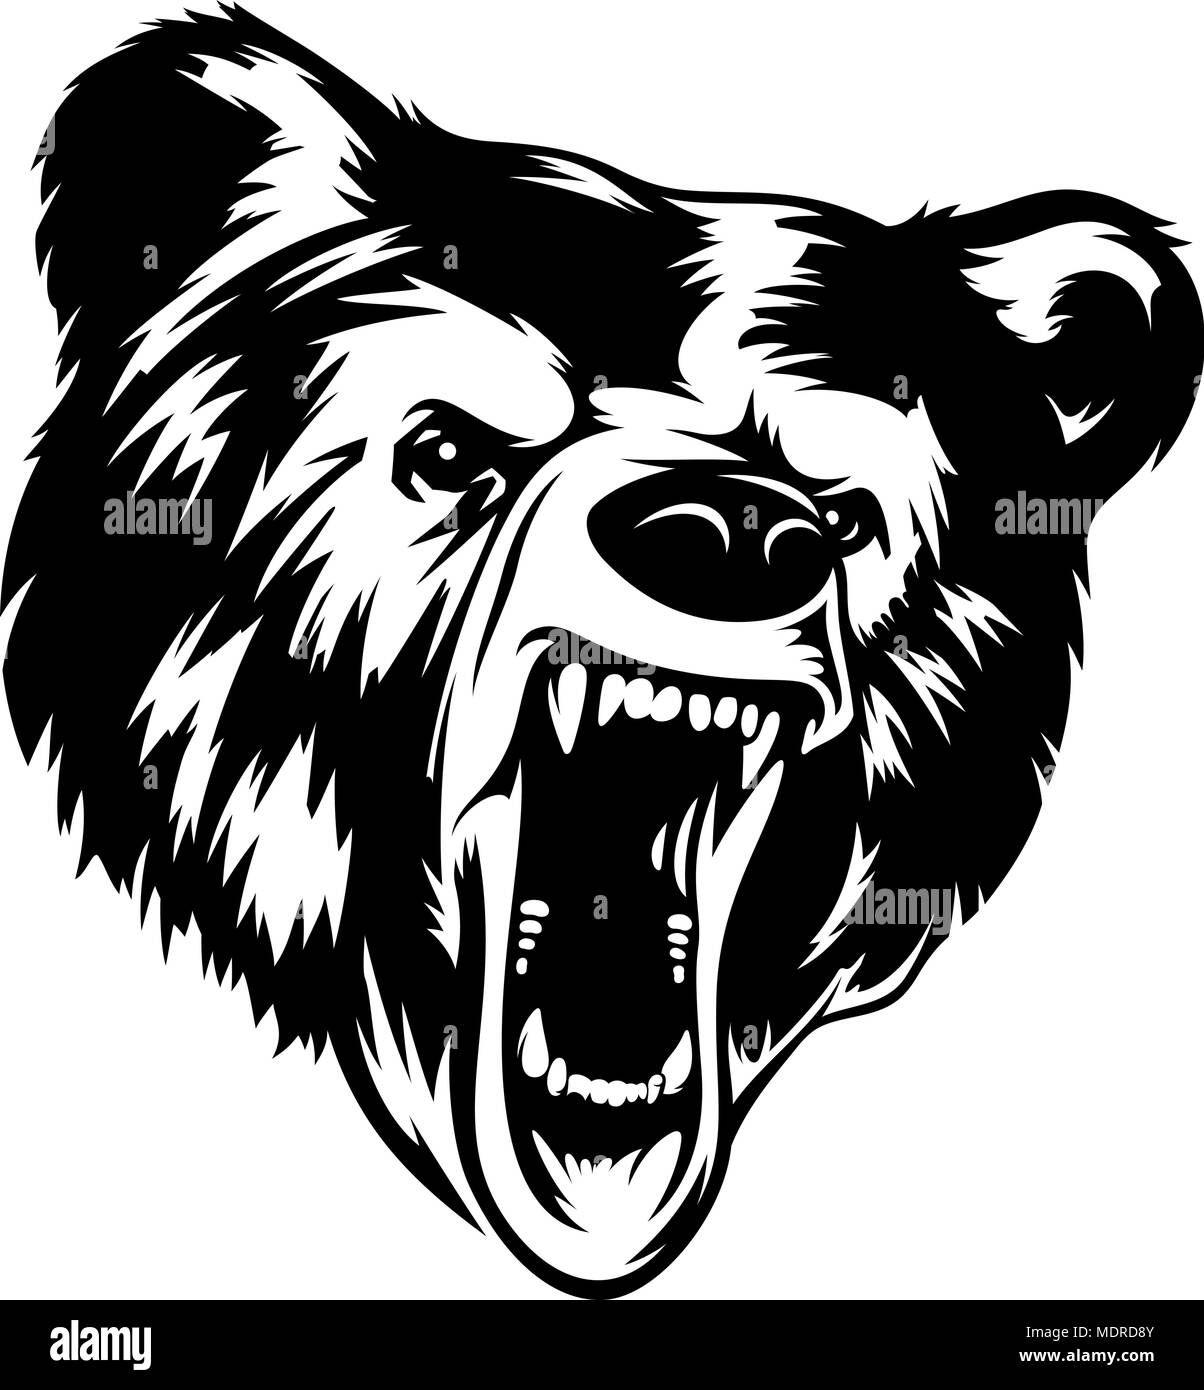 Grizzly Bär Kopf schwarz-weiß Vector Illustration. Es kann als Druck auf T-Shirts und andere Kleidung verwendet werden. Stock Vektor